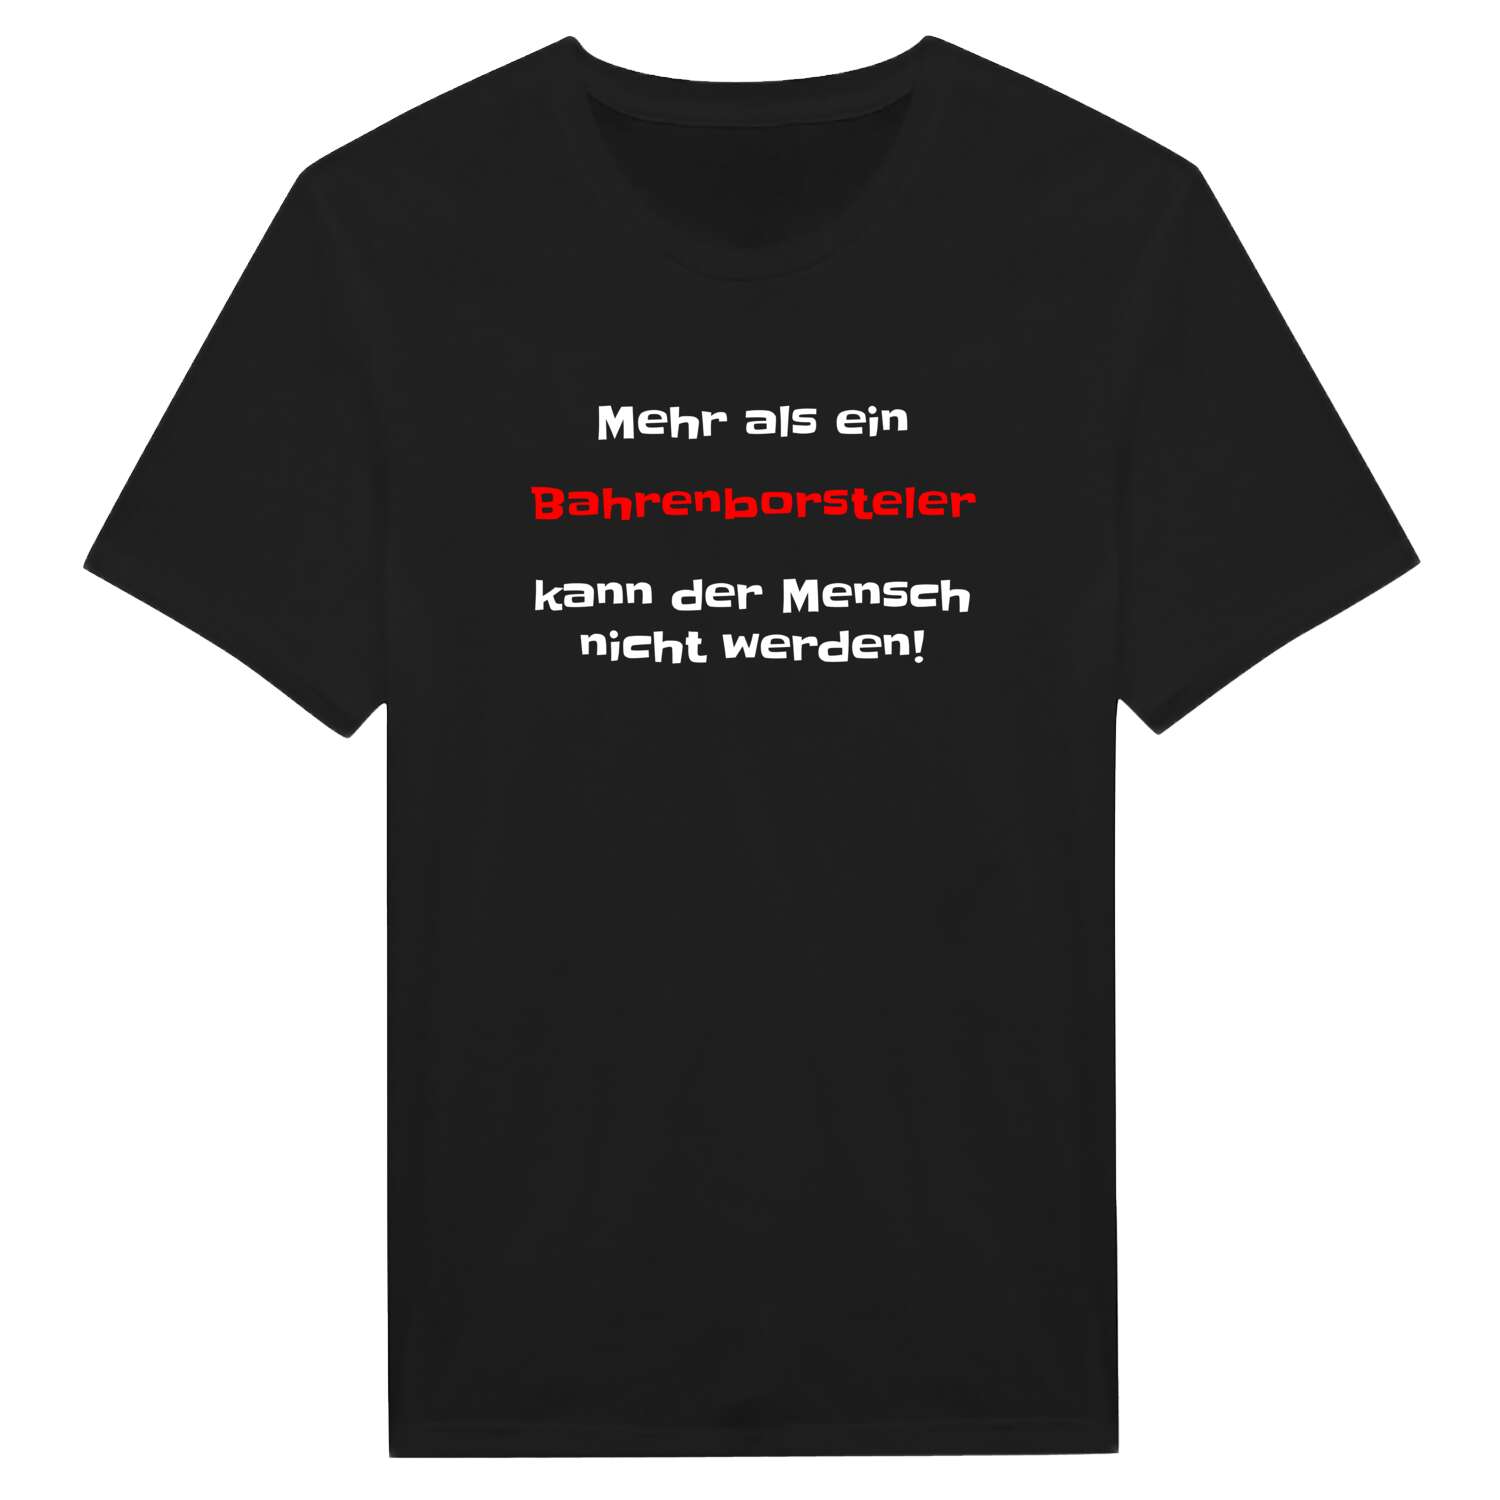 Bahrenborstel T-Shirt »Mehr als ein«